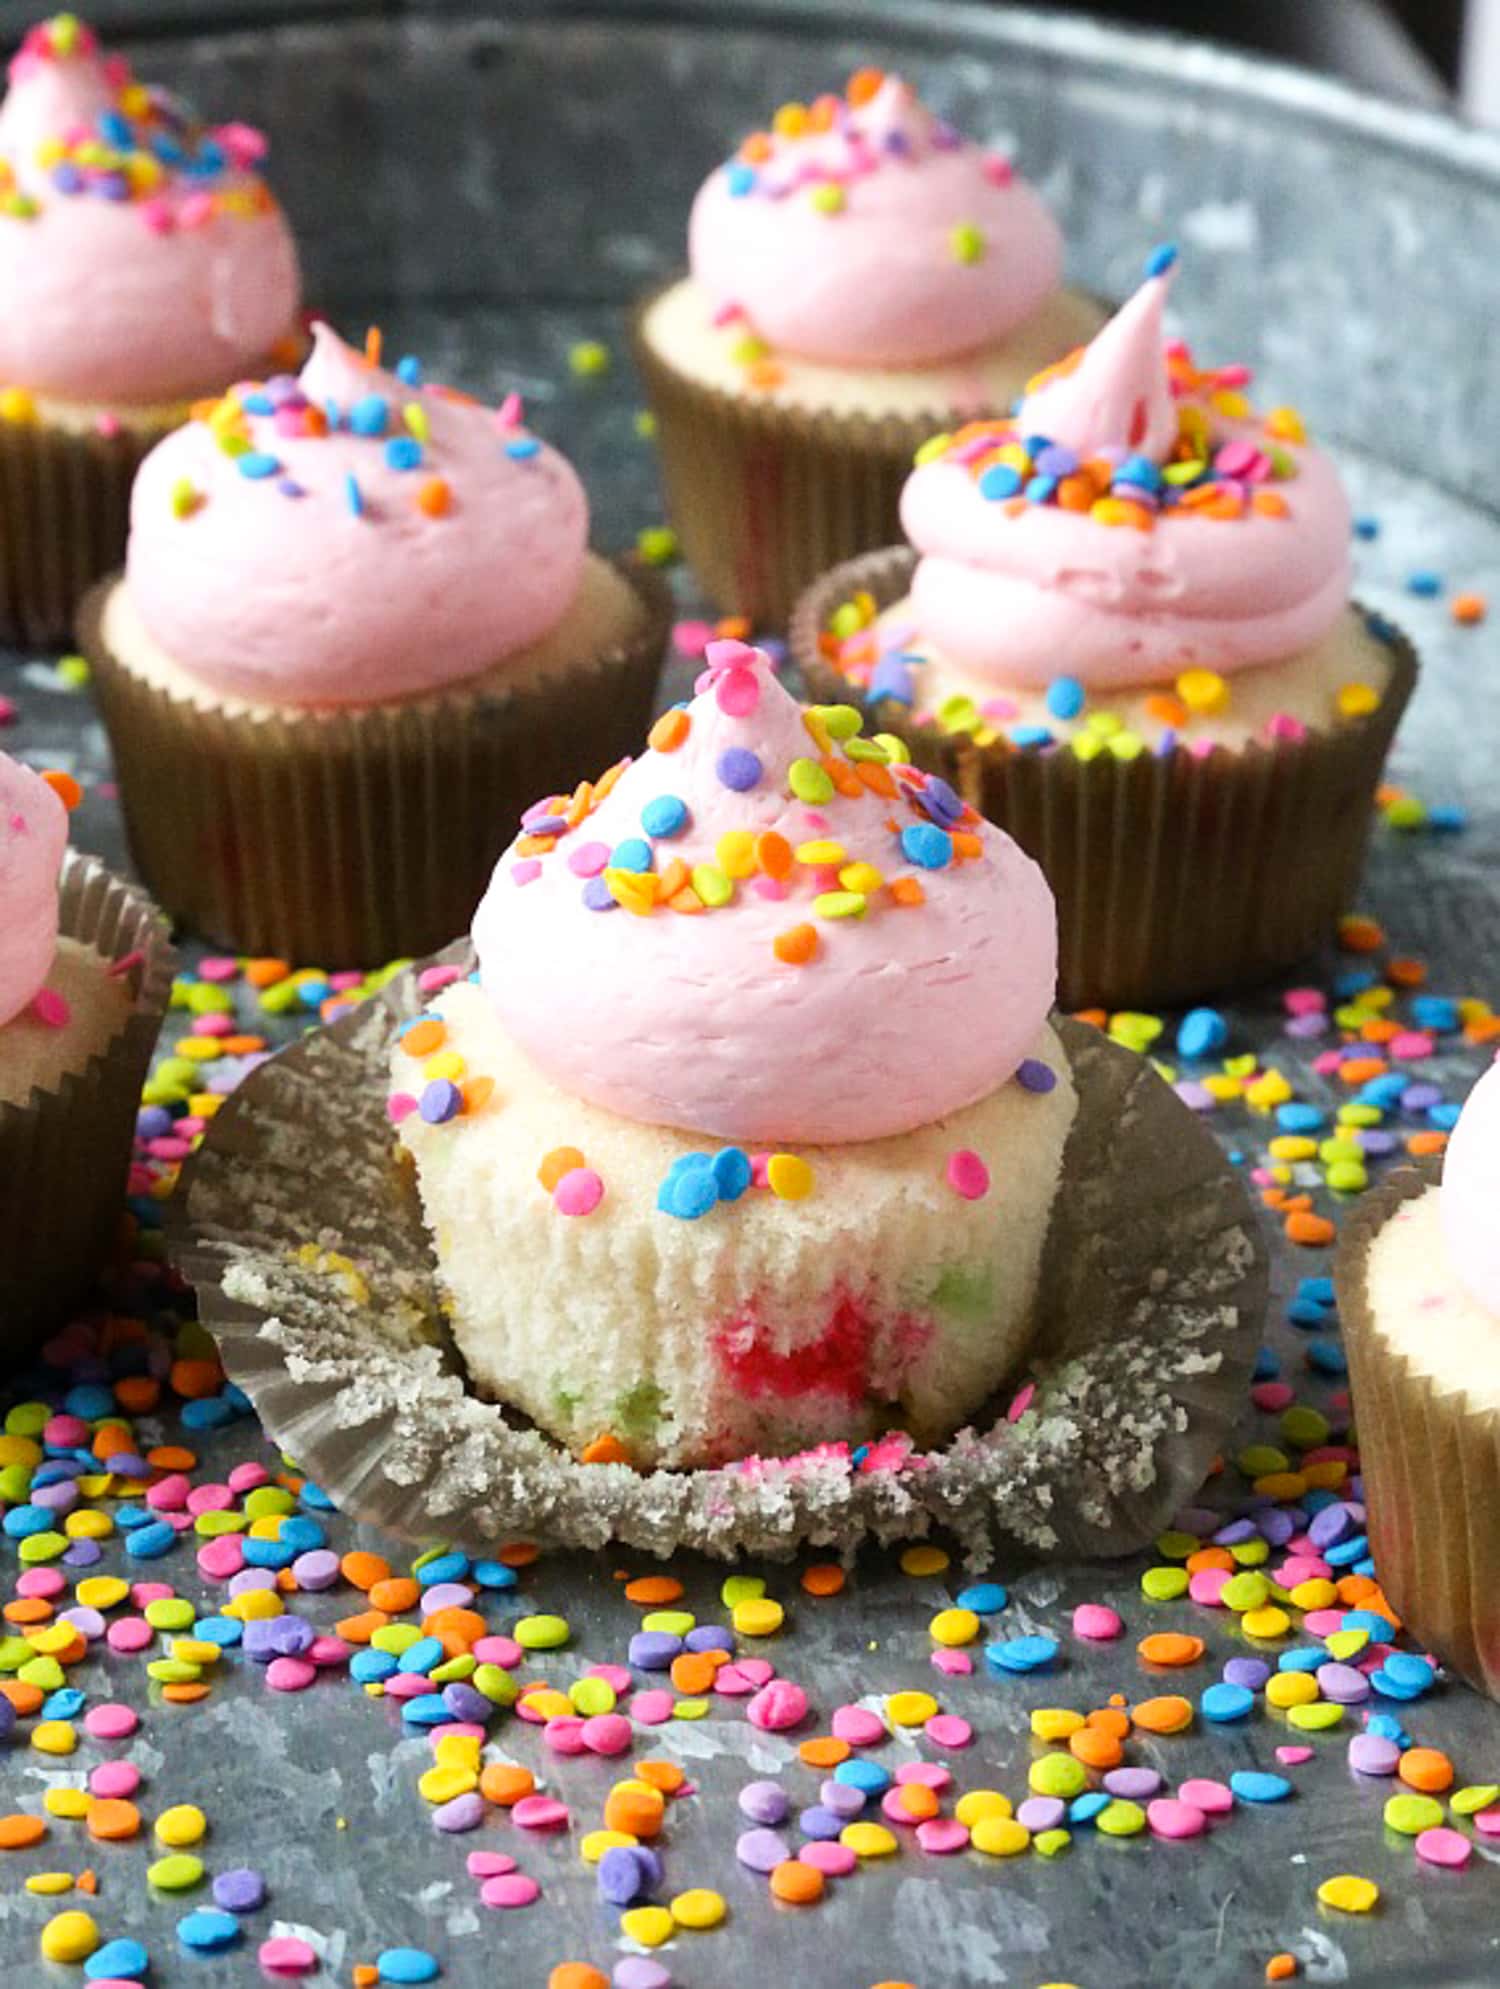 Cupcake cubierto con forro pelado cubierto con glaseado y un chorrito de crema de mantequilla rosa